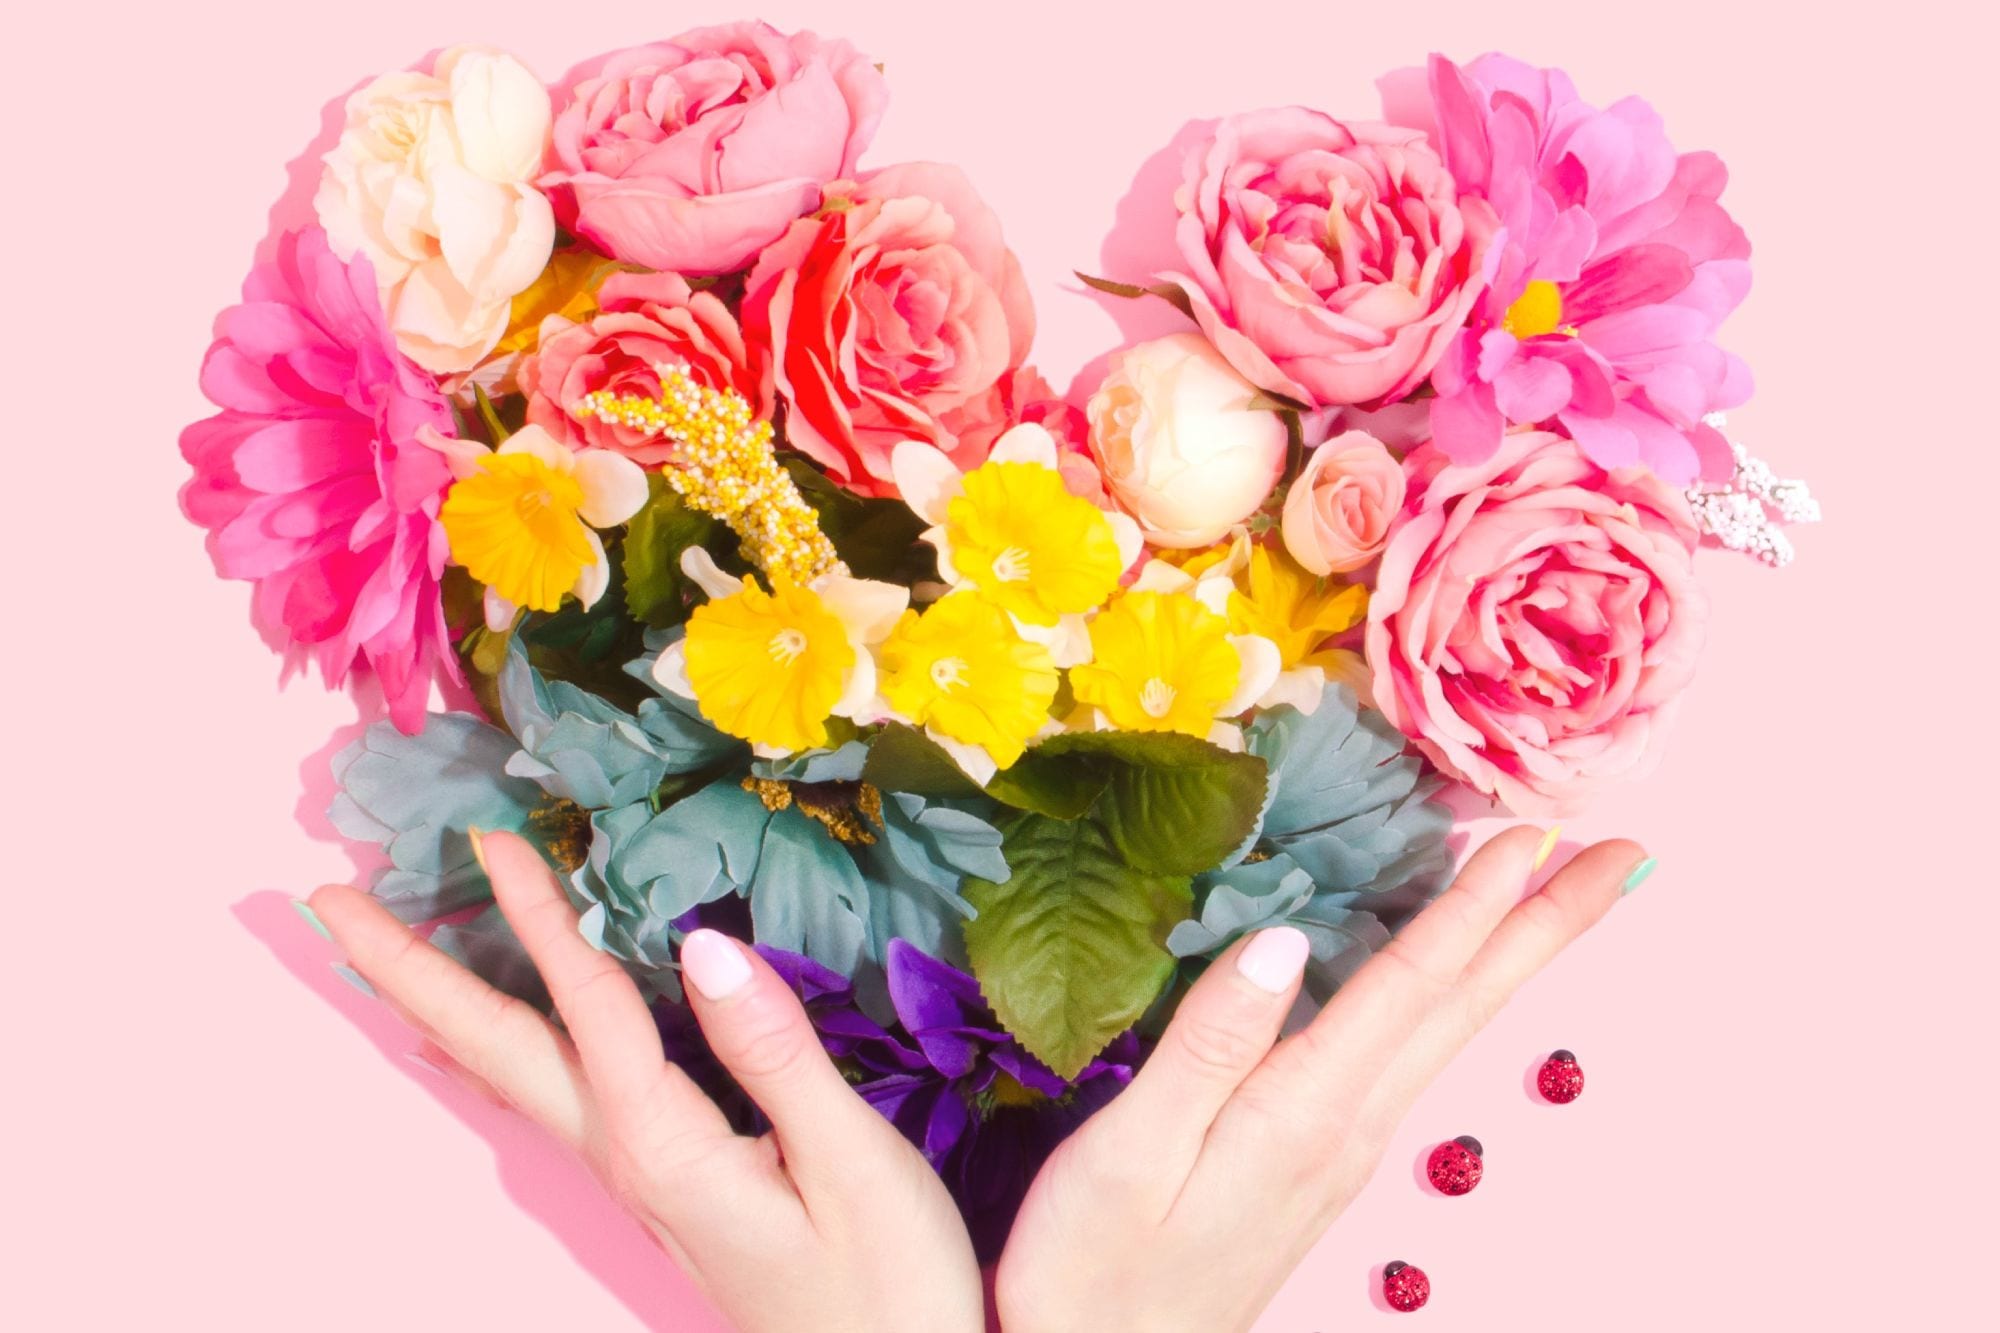 Heart hands flowers, nut-allergic valentine